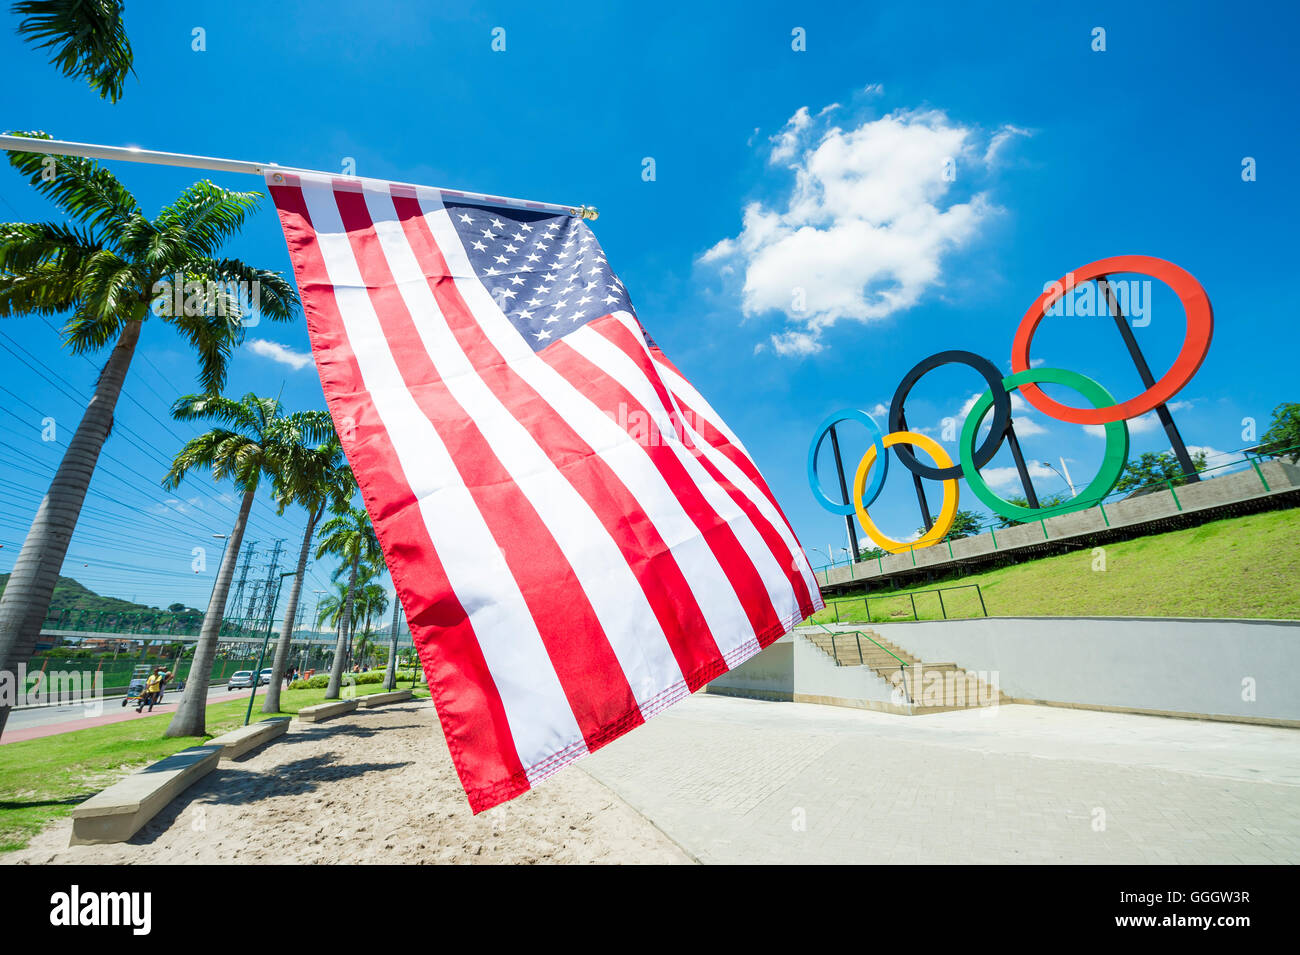 RIO DE JANEIRO - le 18 mars 2016 : un drapeau américain est en face d'un affichage des anneaux olympiques dans la région de Parque Madureira Park. Banque D'Images